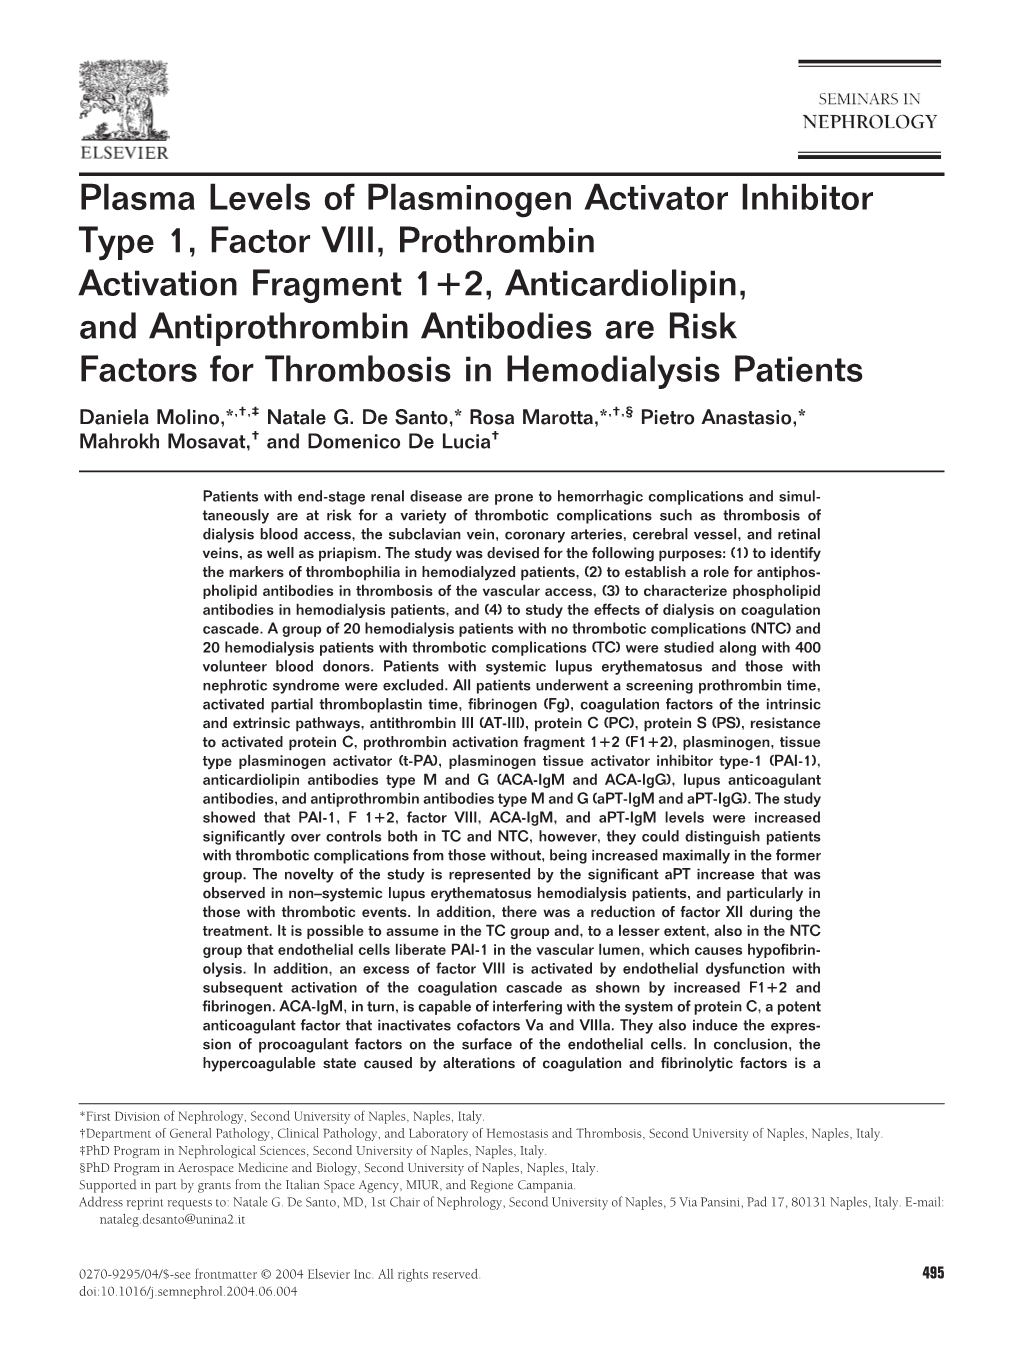 Plasma Levels of Plasminogen Activator Inhibitor Type 1, Factor VIII